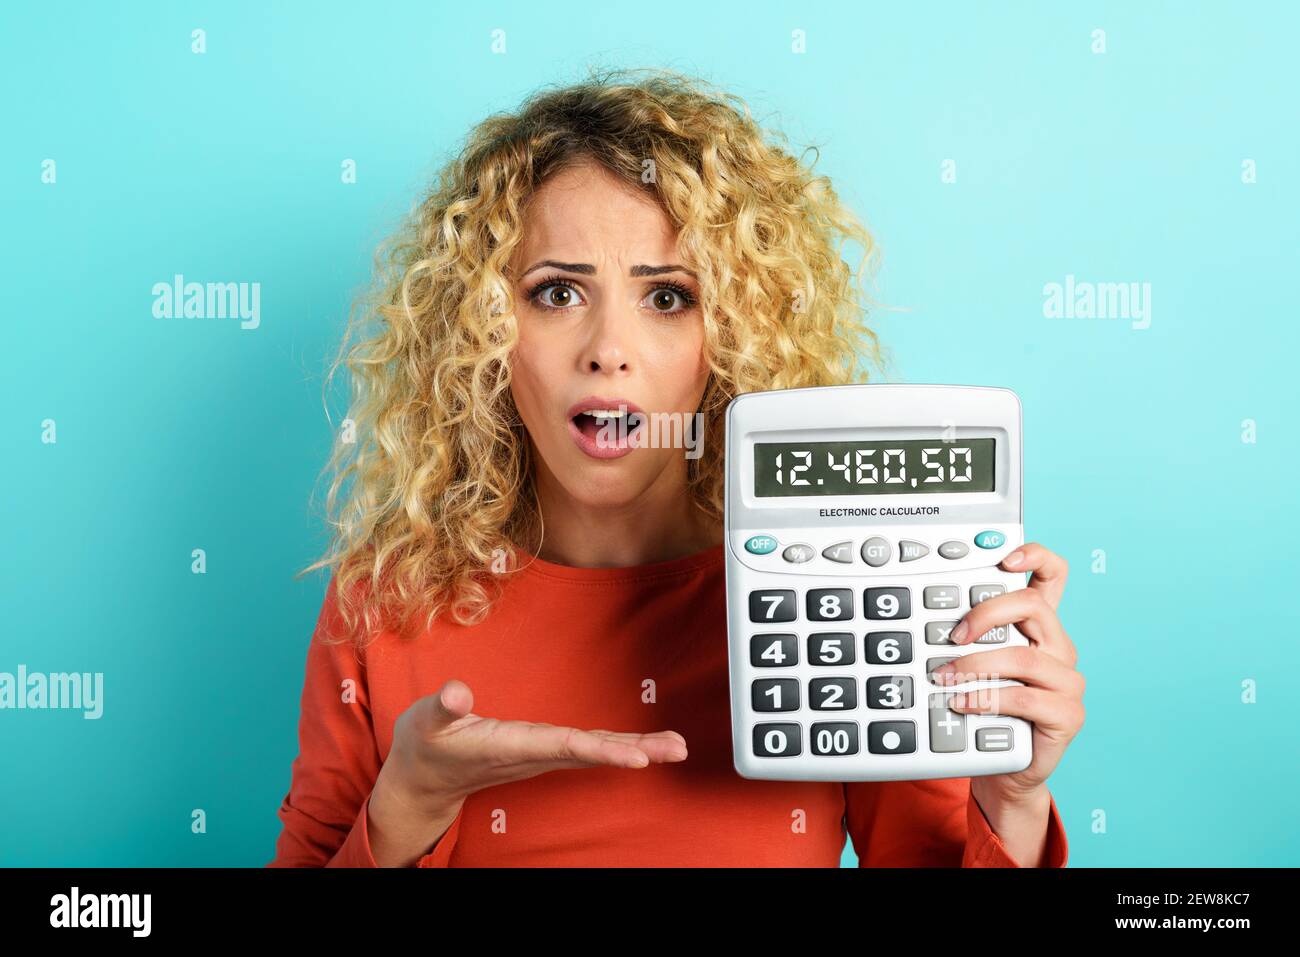 Mädchen ist schockiert und zeigt ihre Schulden auf Taschenrechner-Display. Cyanfarbener Hintergrund Stockfoto